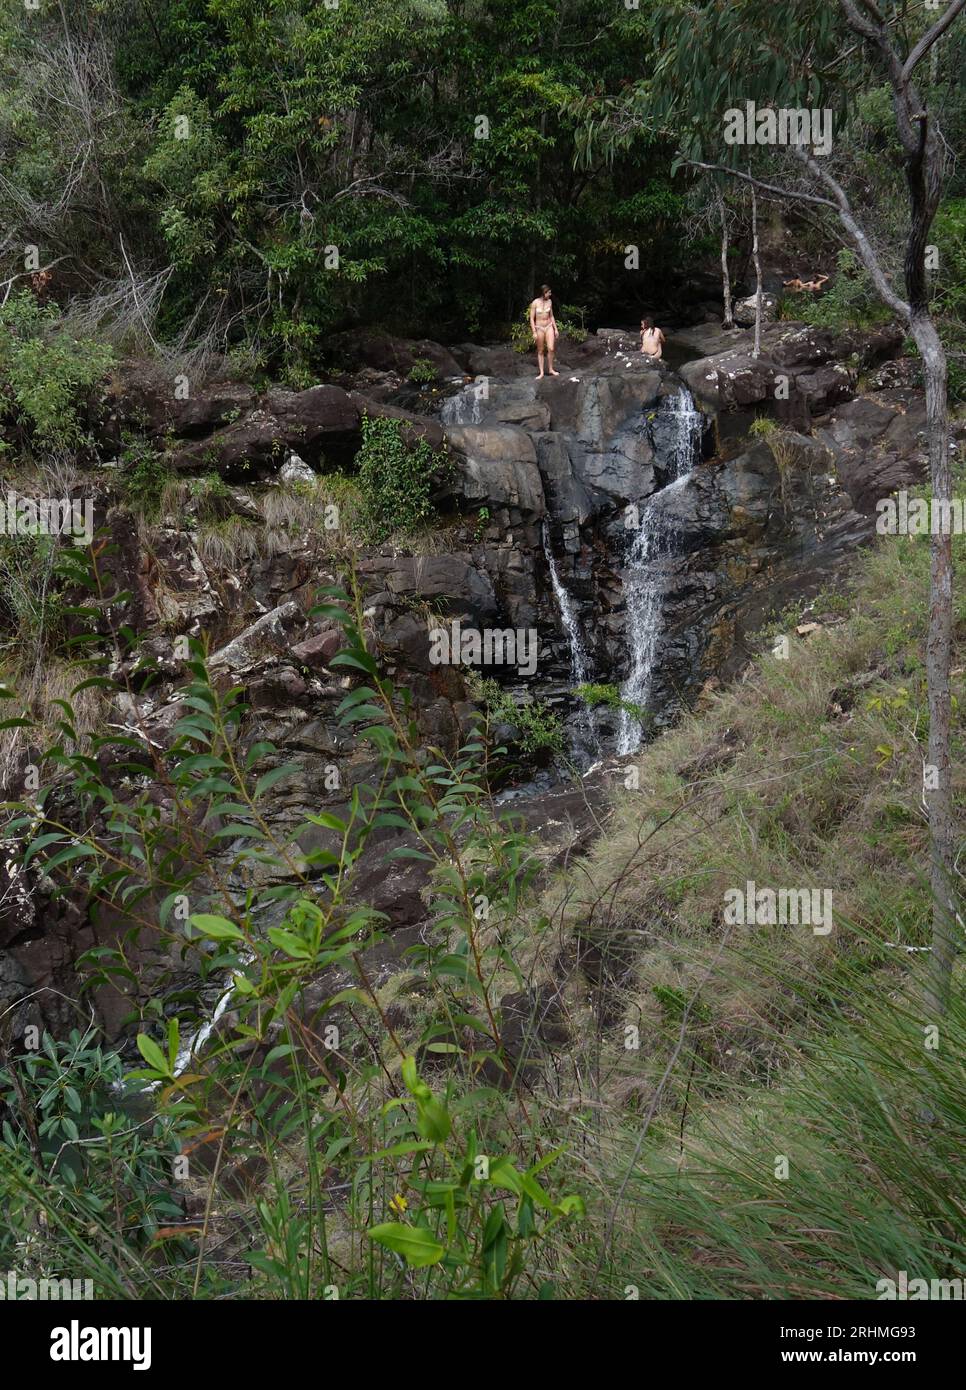 Junge weibliche Besucher der Attie Creek Falls, Girringun National Park, in der Nähe von Cardwell, Queensland, Australien. Nein MR Stockfoto